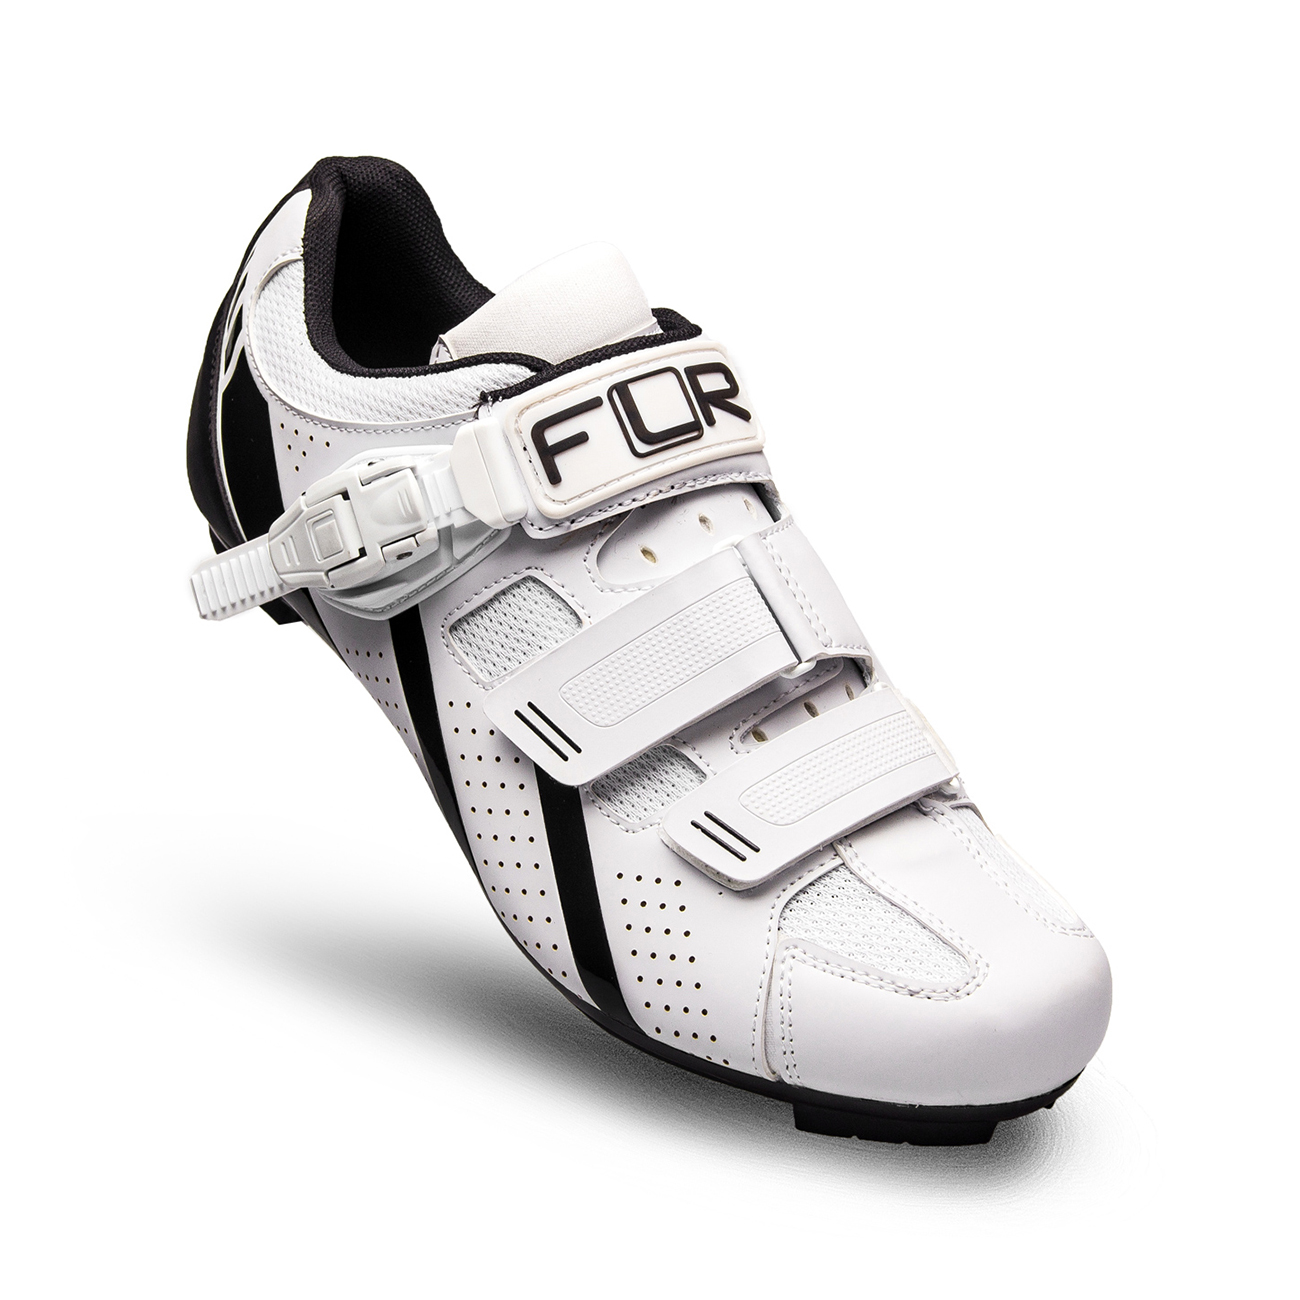 
                FLR Cyklistické tretry - F15 - černá/bílá 39
            